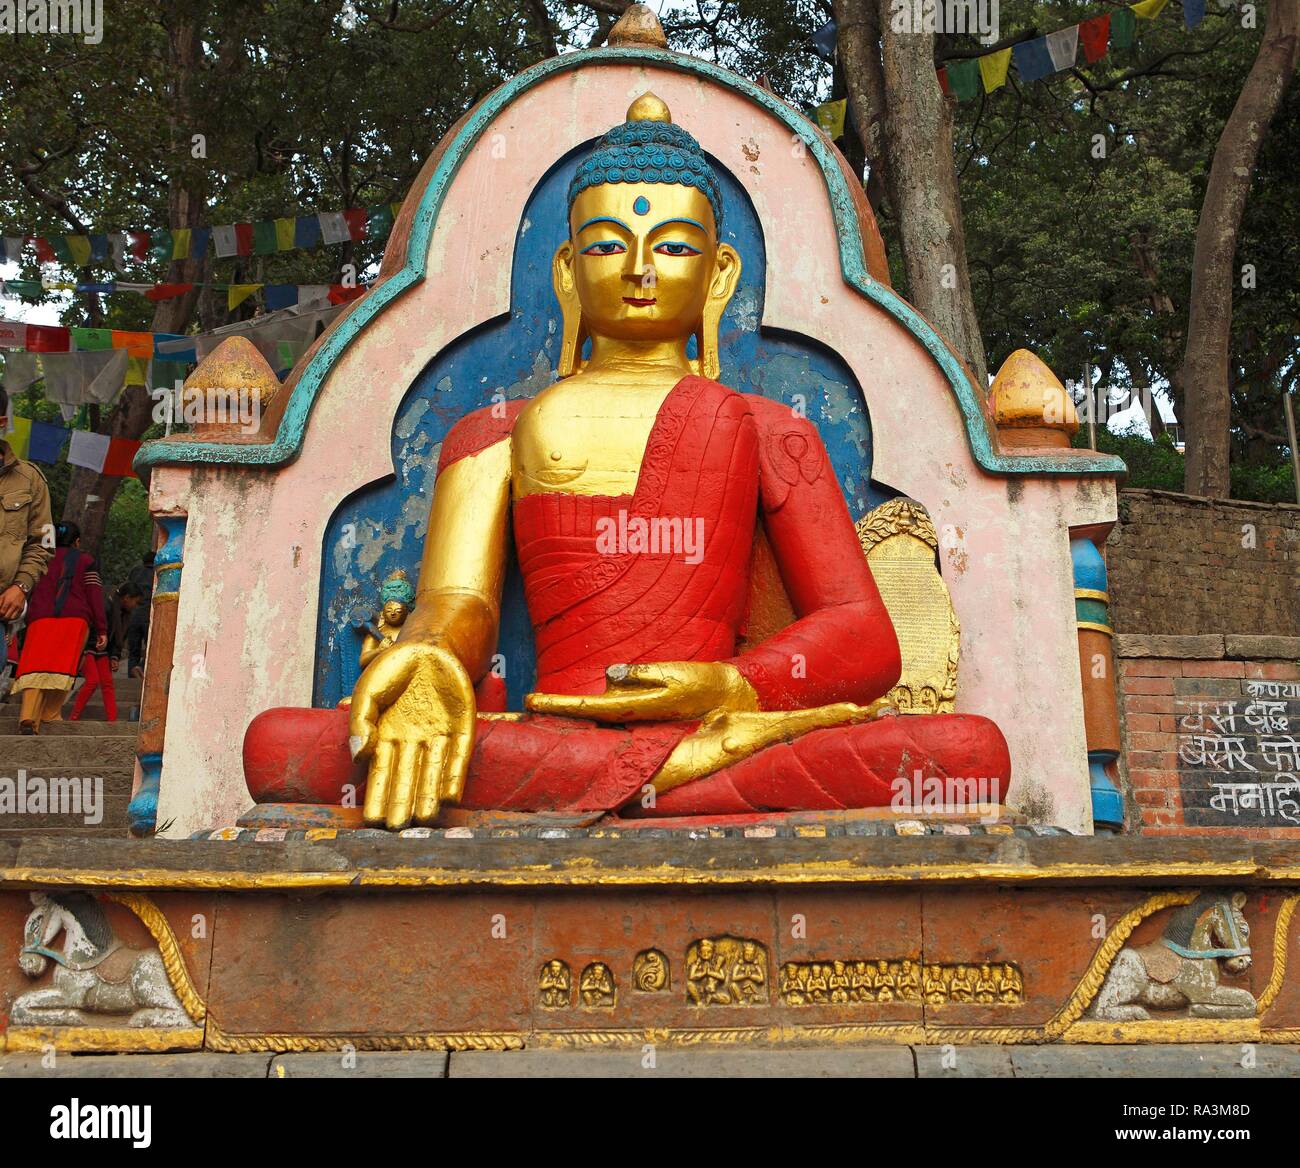 La figura del Buddha, Swayambhunath monkey temple, Kathmandu, Nepal Foto Stock